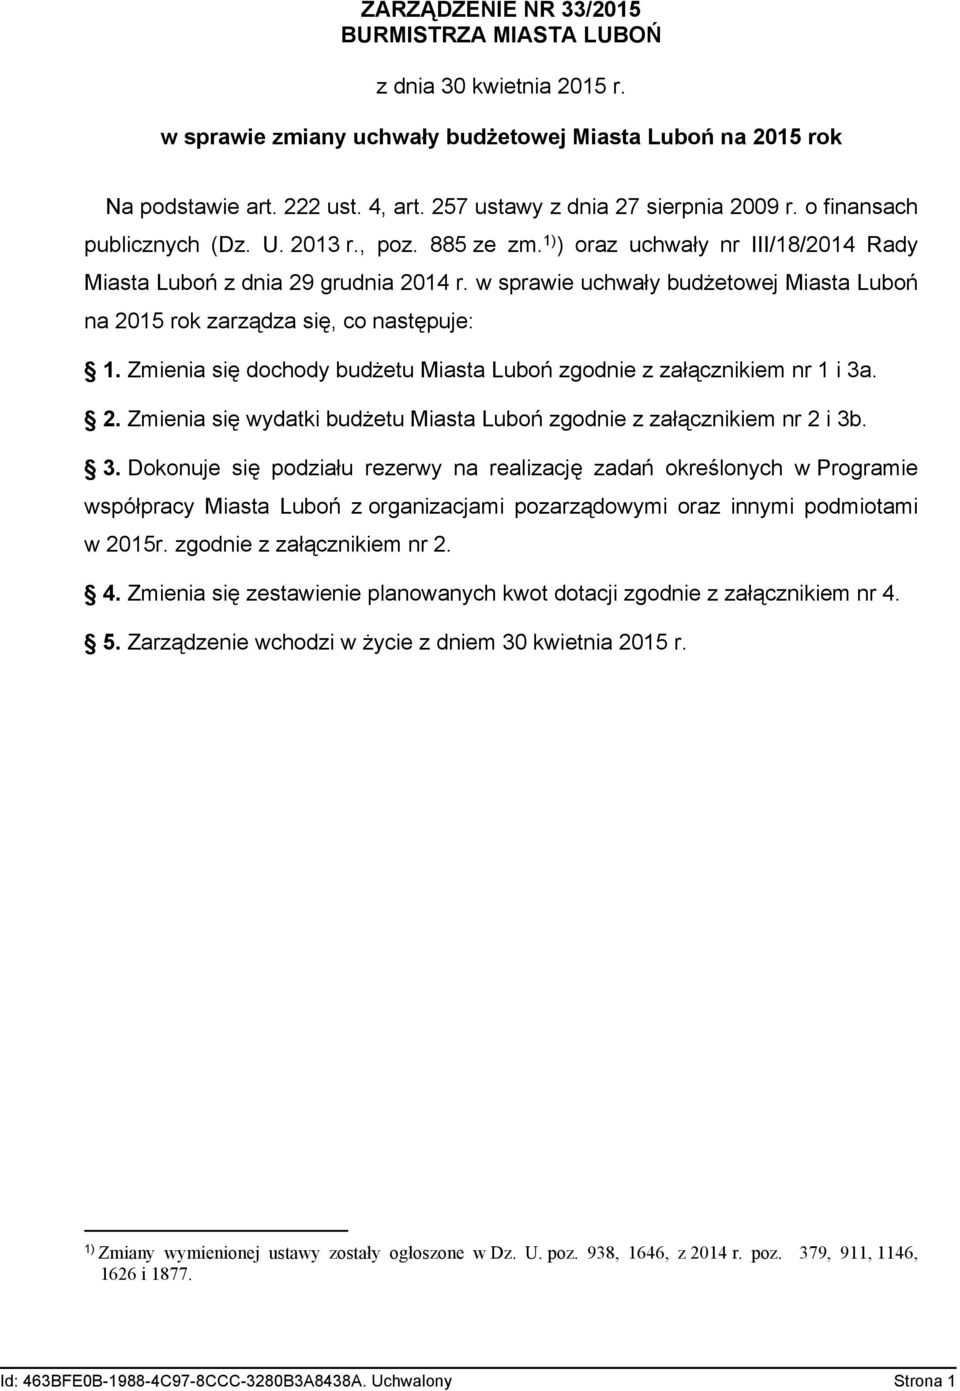 w sprawie uchwały budżetowej Miasta Luboń na 2015 rok zarządza się, co następuje: 1. Zmienia się dochody budżetu Miasta Luboń zgodnie z załącznikiem nr 1 i 3a. 2. Zmienia się wydatki budżetu Miasta Luboń zgodnie z załącznikiem nr 2 i 3b.